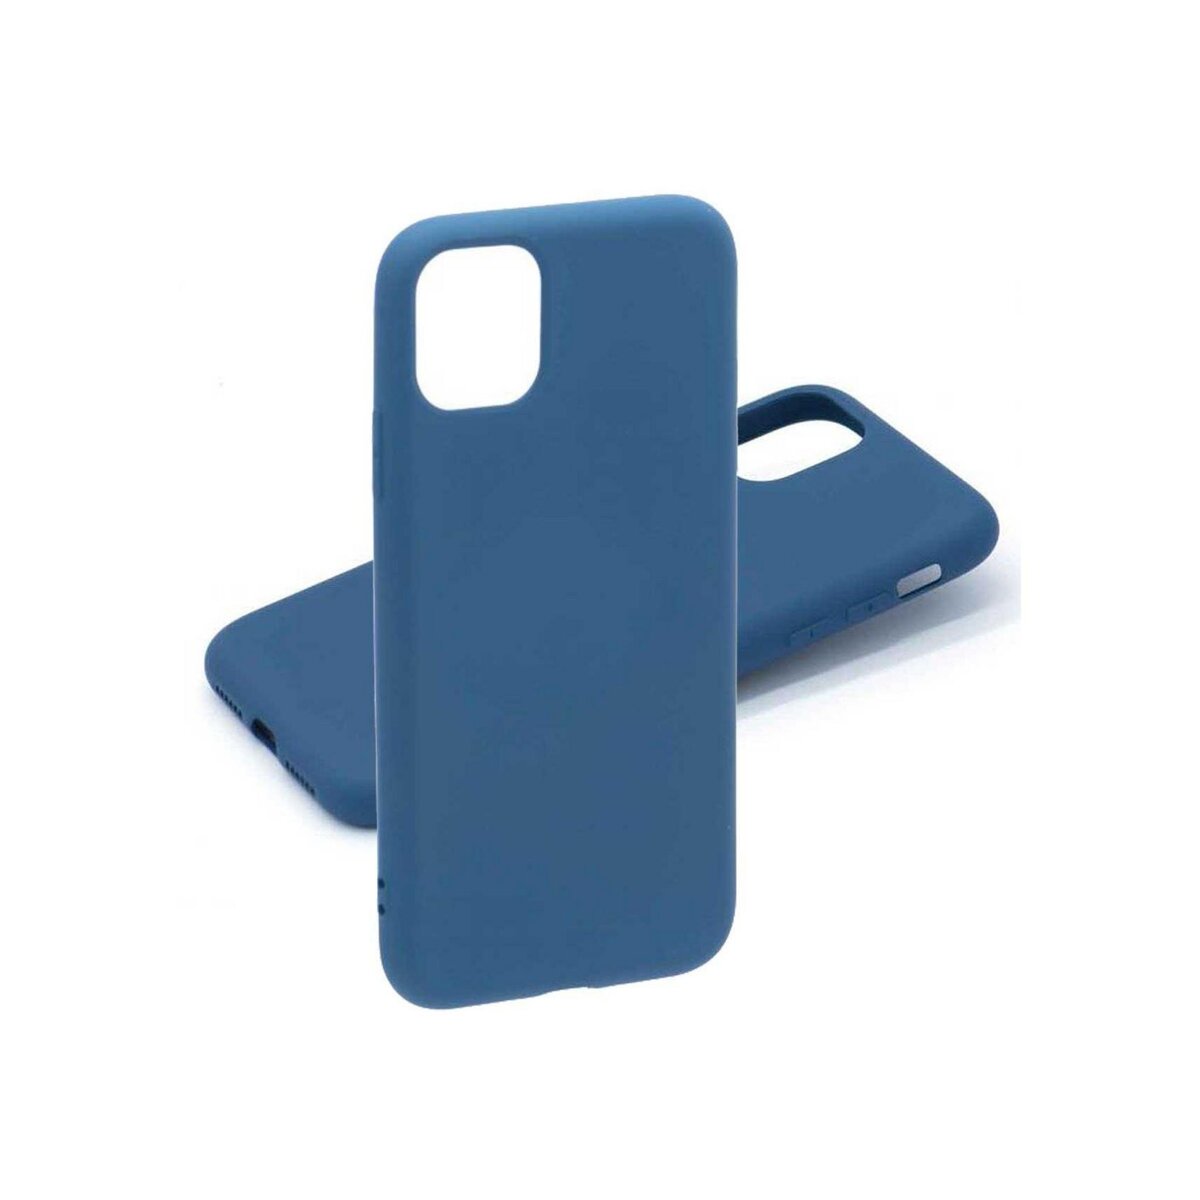 amahousse Coque souple bleue silicone iPhone 11 Pro toucher soft